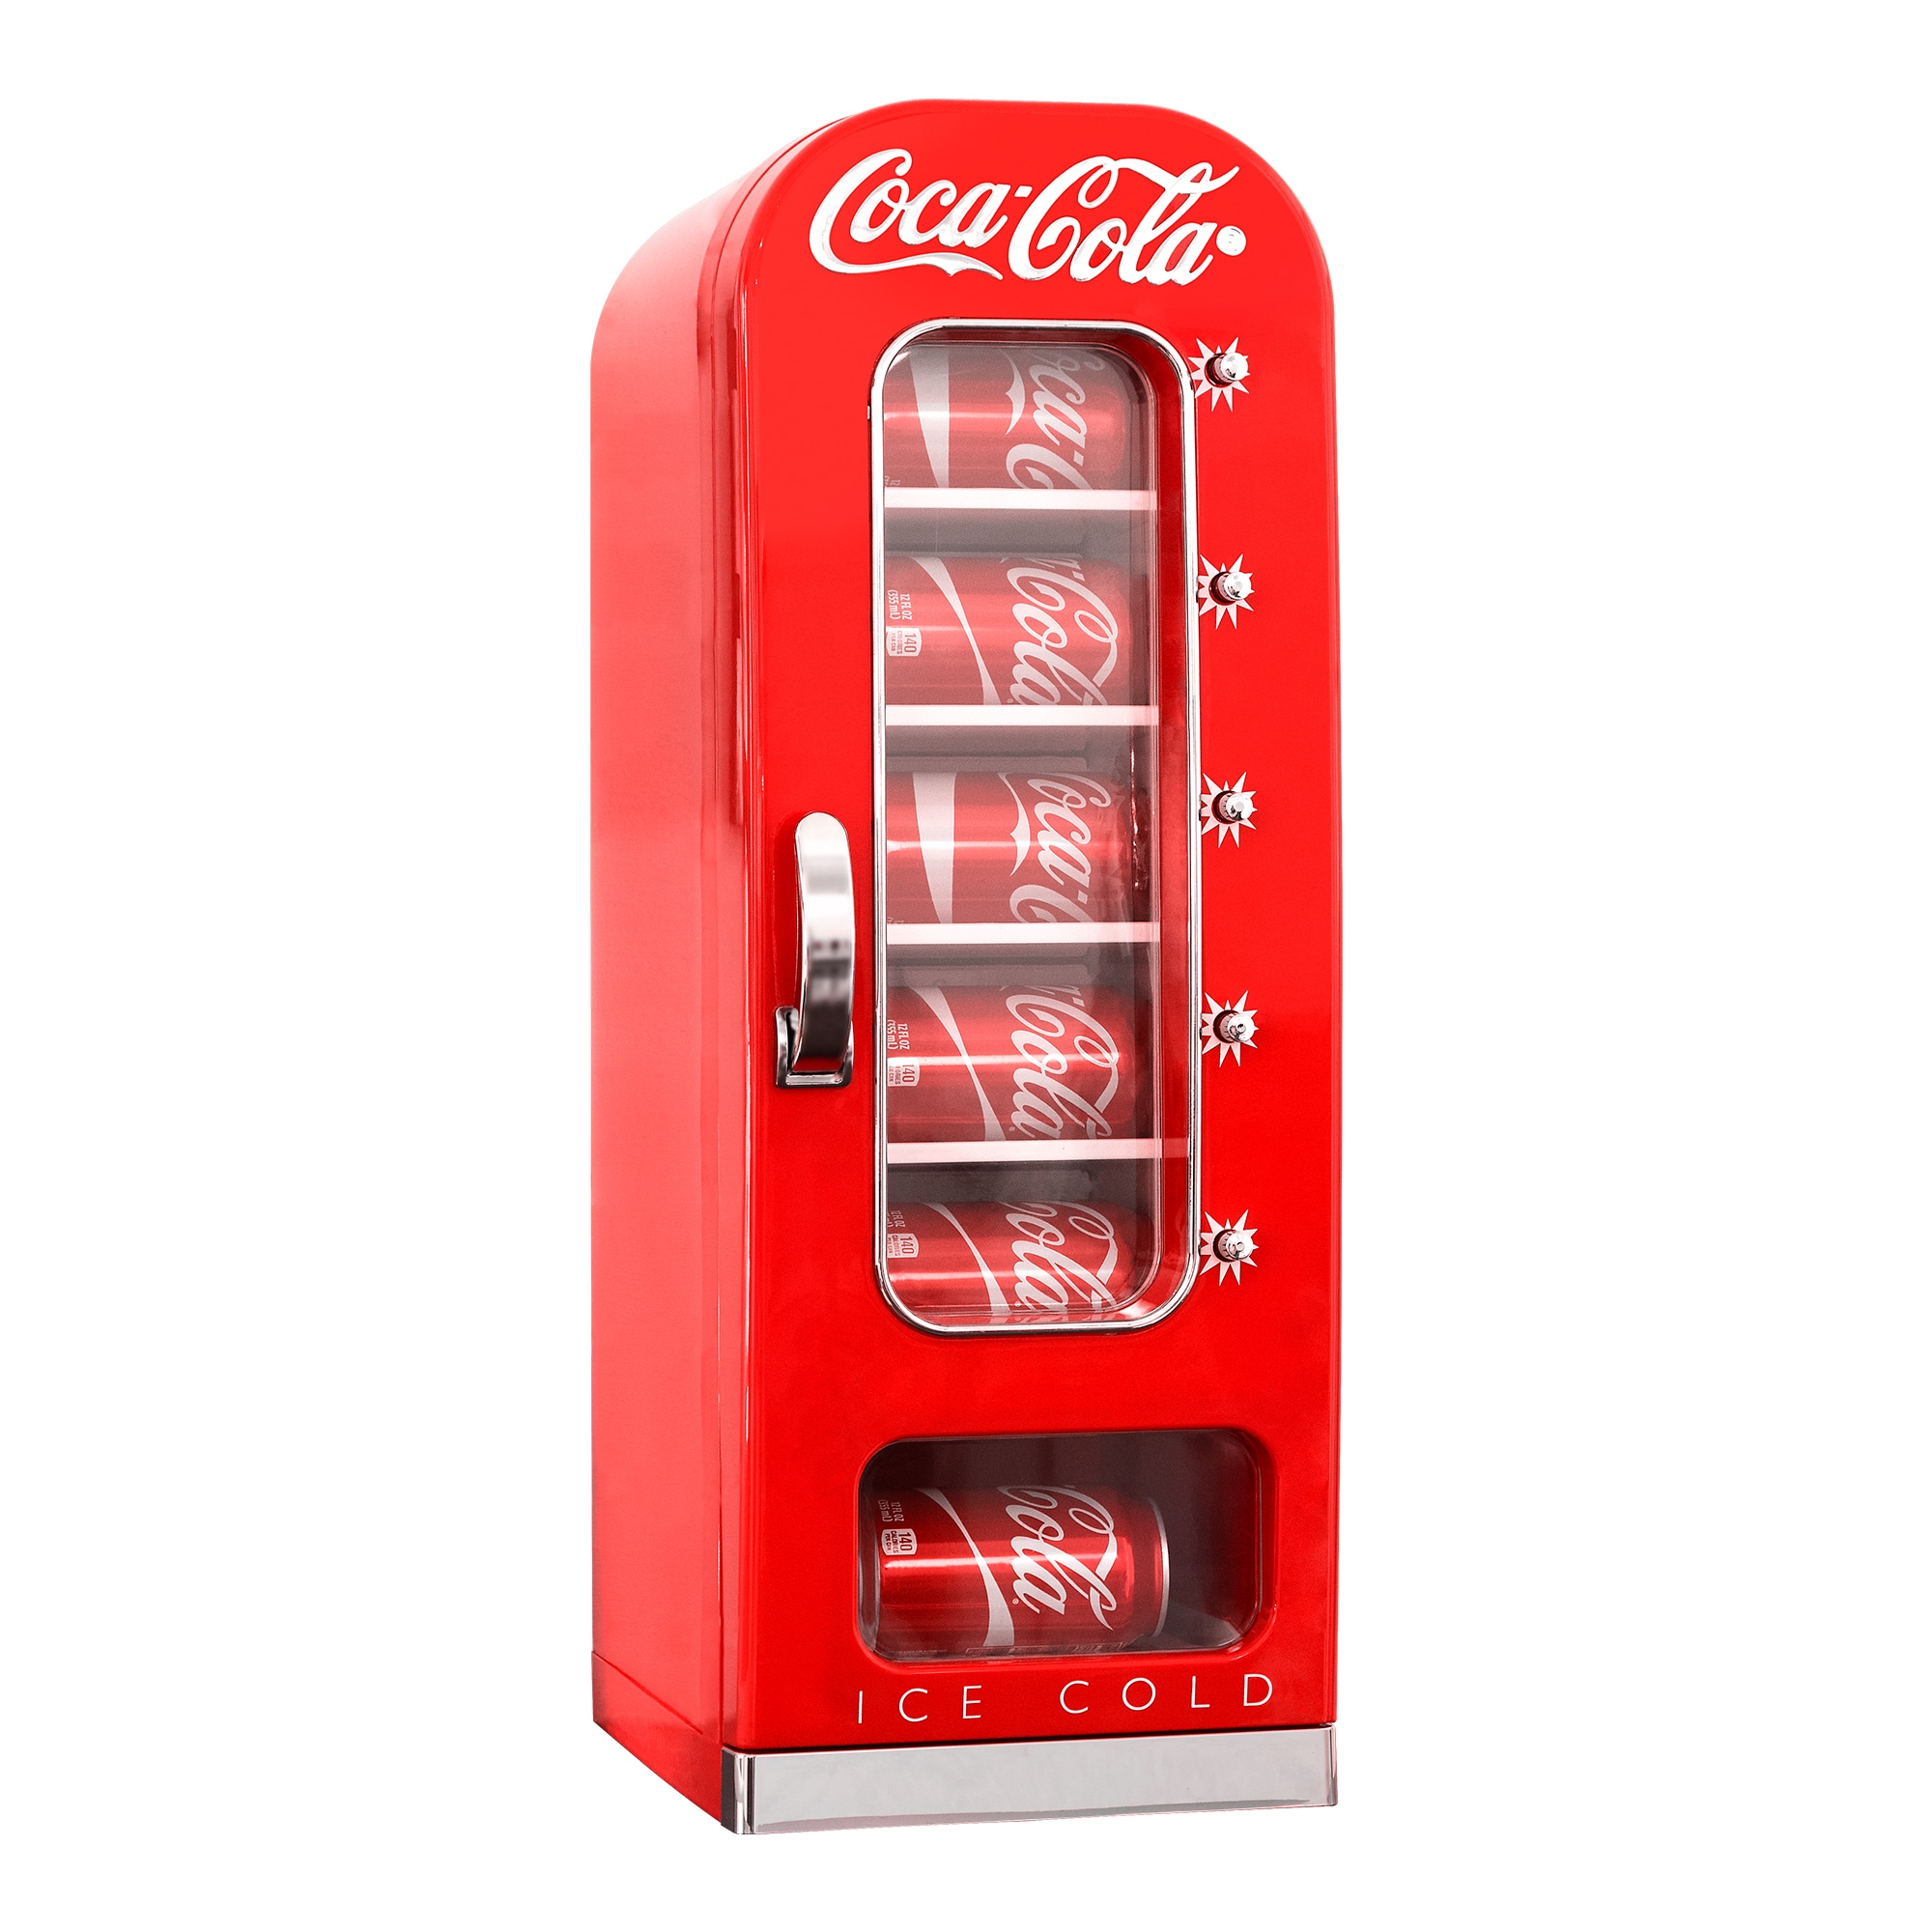 Mini Refrigerator Coca Cola for Sale in Addison, TX - OfferUp